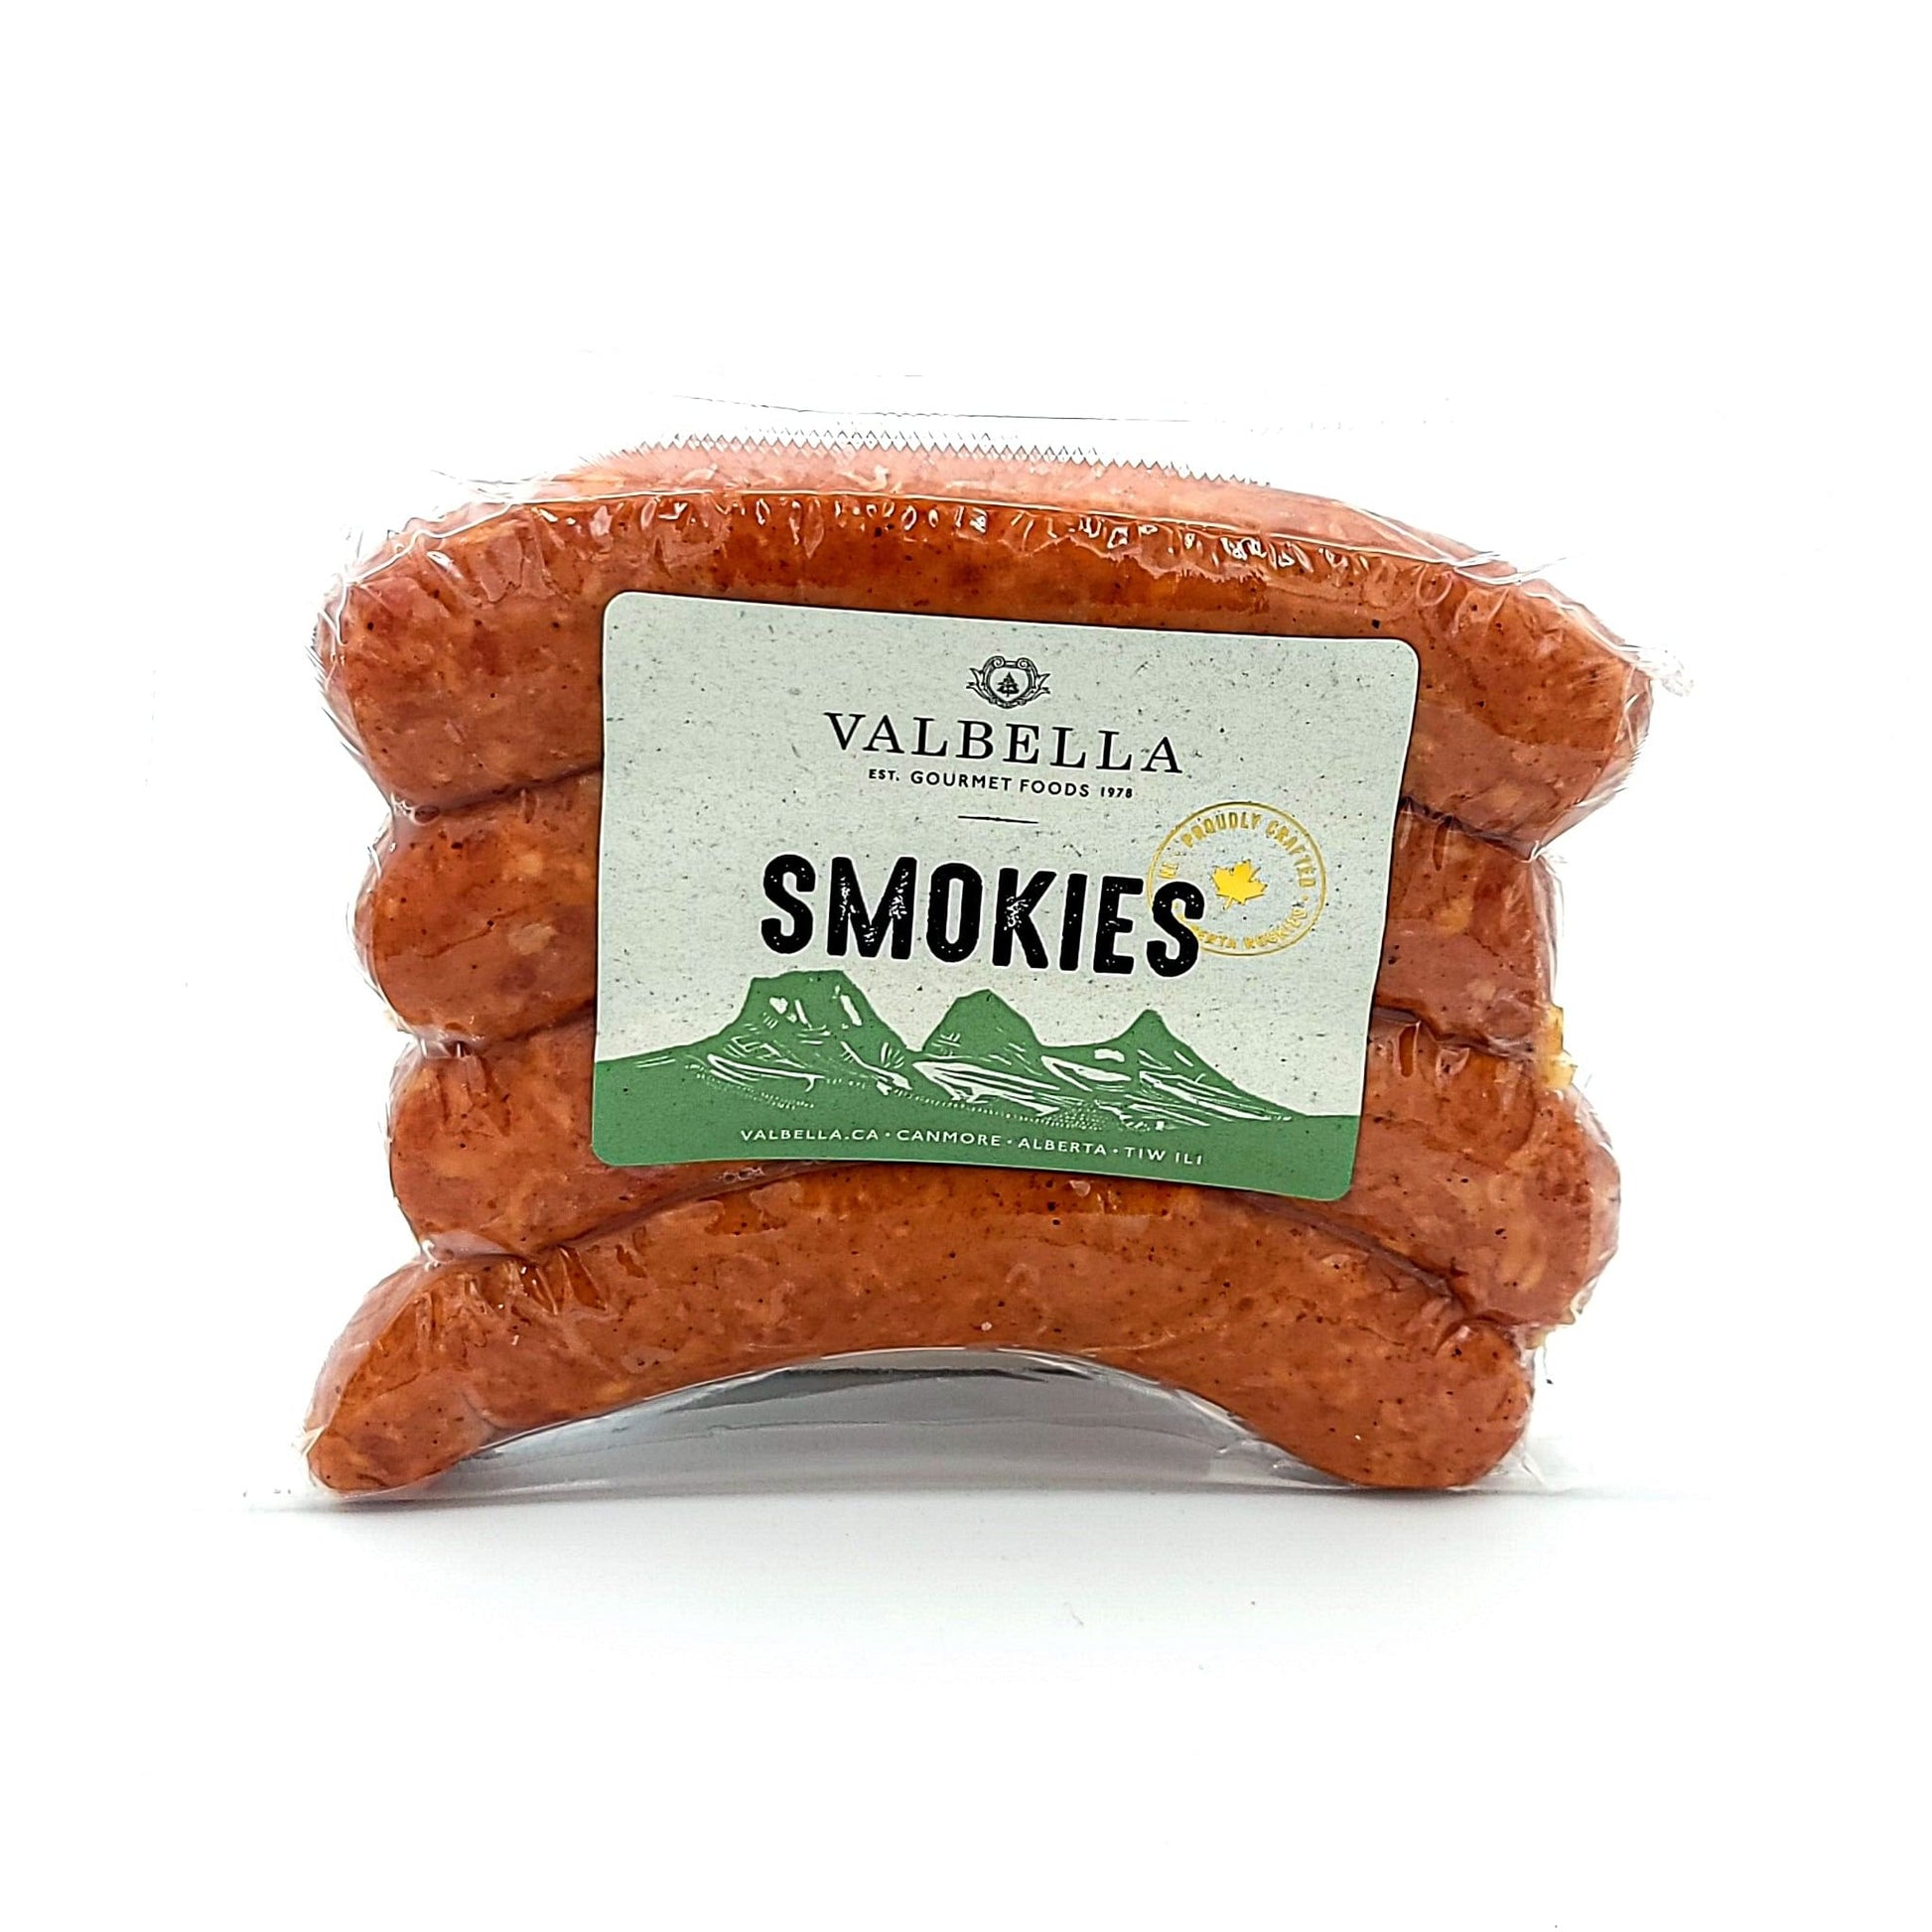 Smokies - Valbella Gourmet Foods